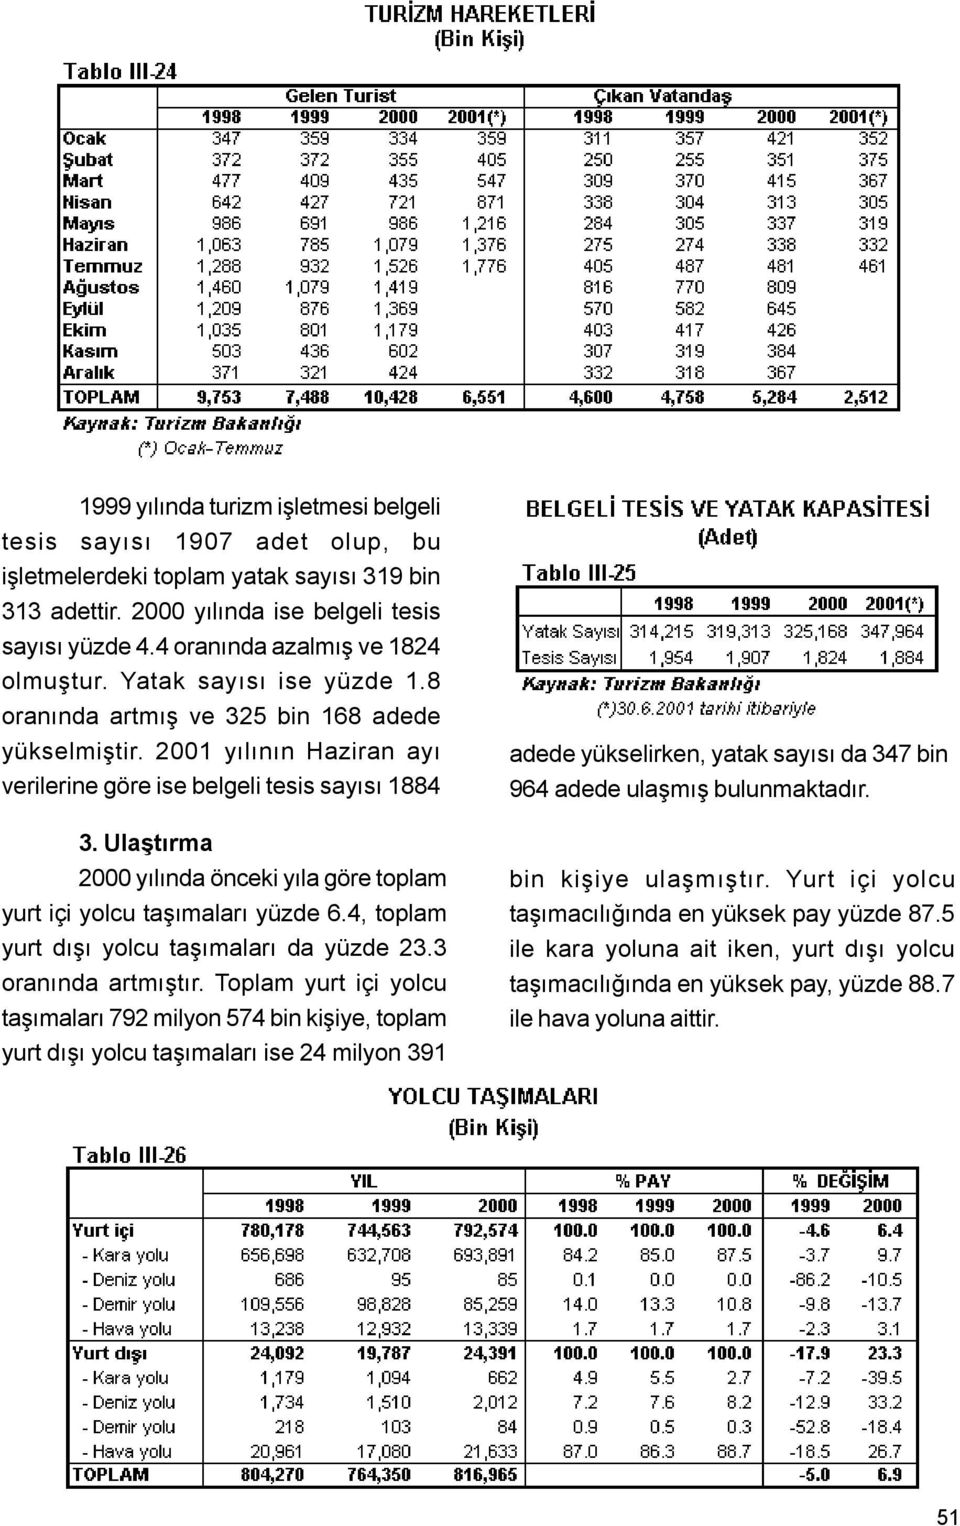 Ulaþtırma 2000 yýlýnda önceki yýla göre toplam yurt içi yolcu taþýmalarý yüzde 6.4, toplam yurt dýþý yolcu taþýmalarý da yüzde 23.3 oranýnda artmýþtýr.